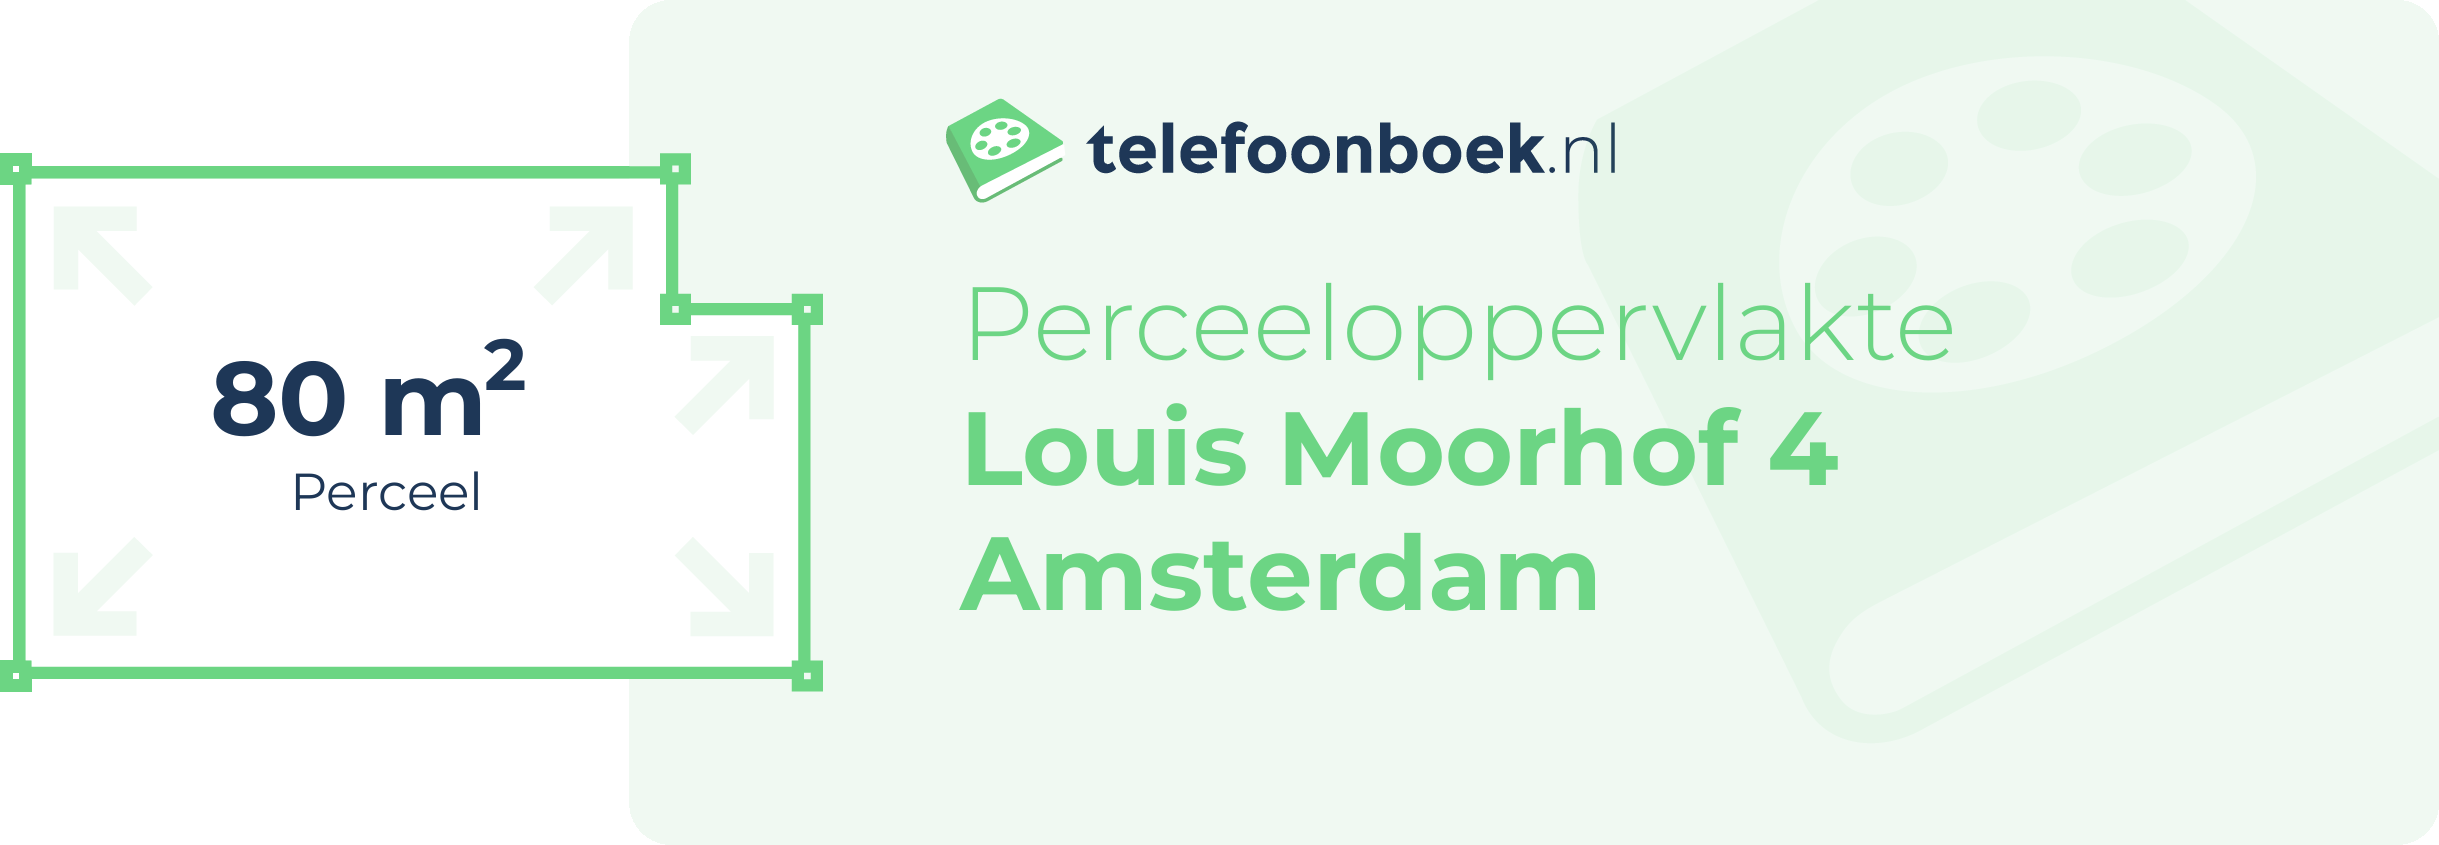 Perceeloppervlakte Louis Moorhof 4 Amsterdam